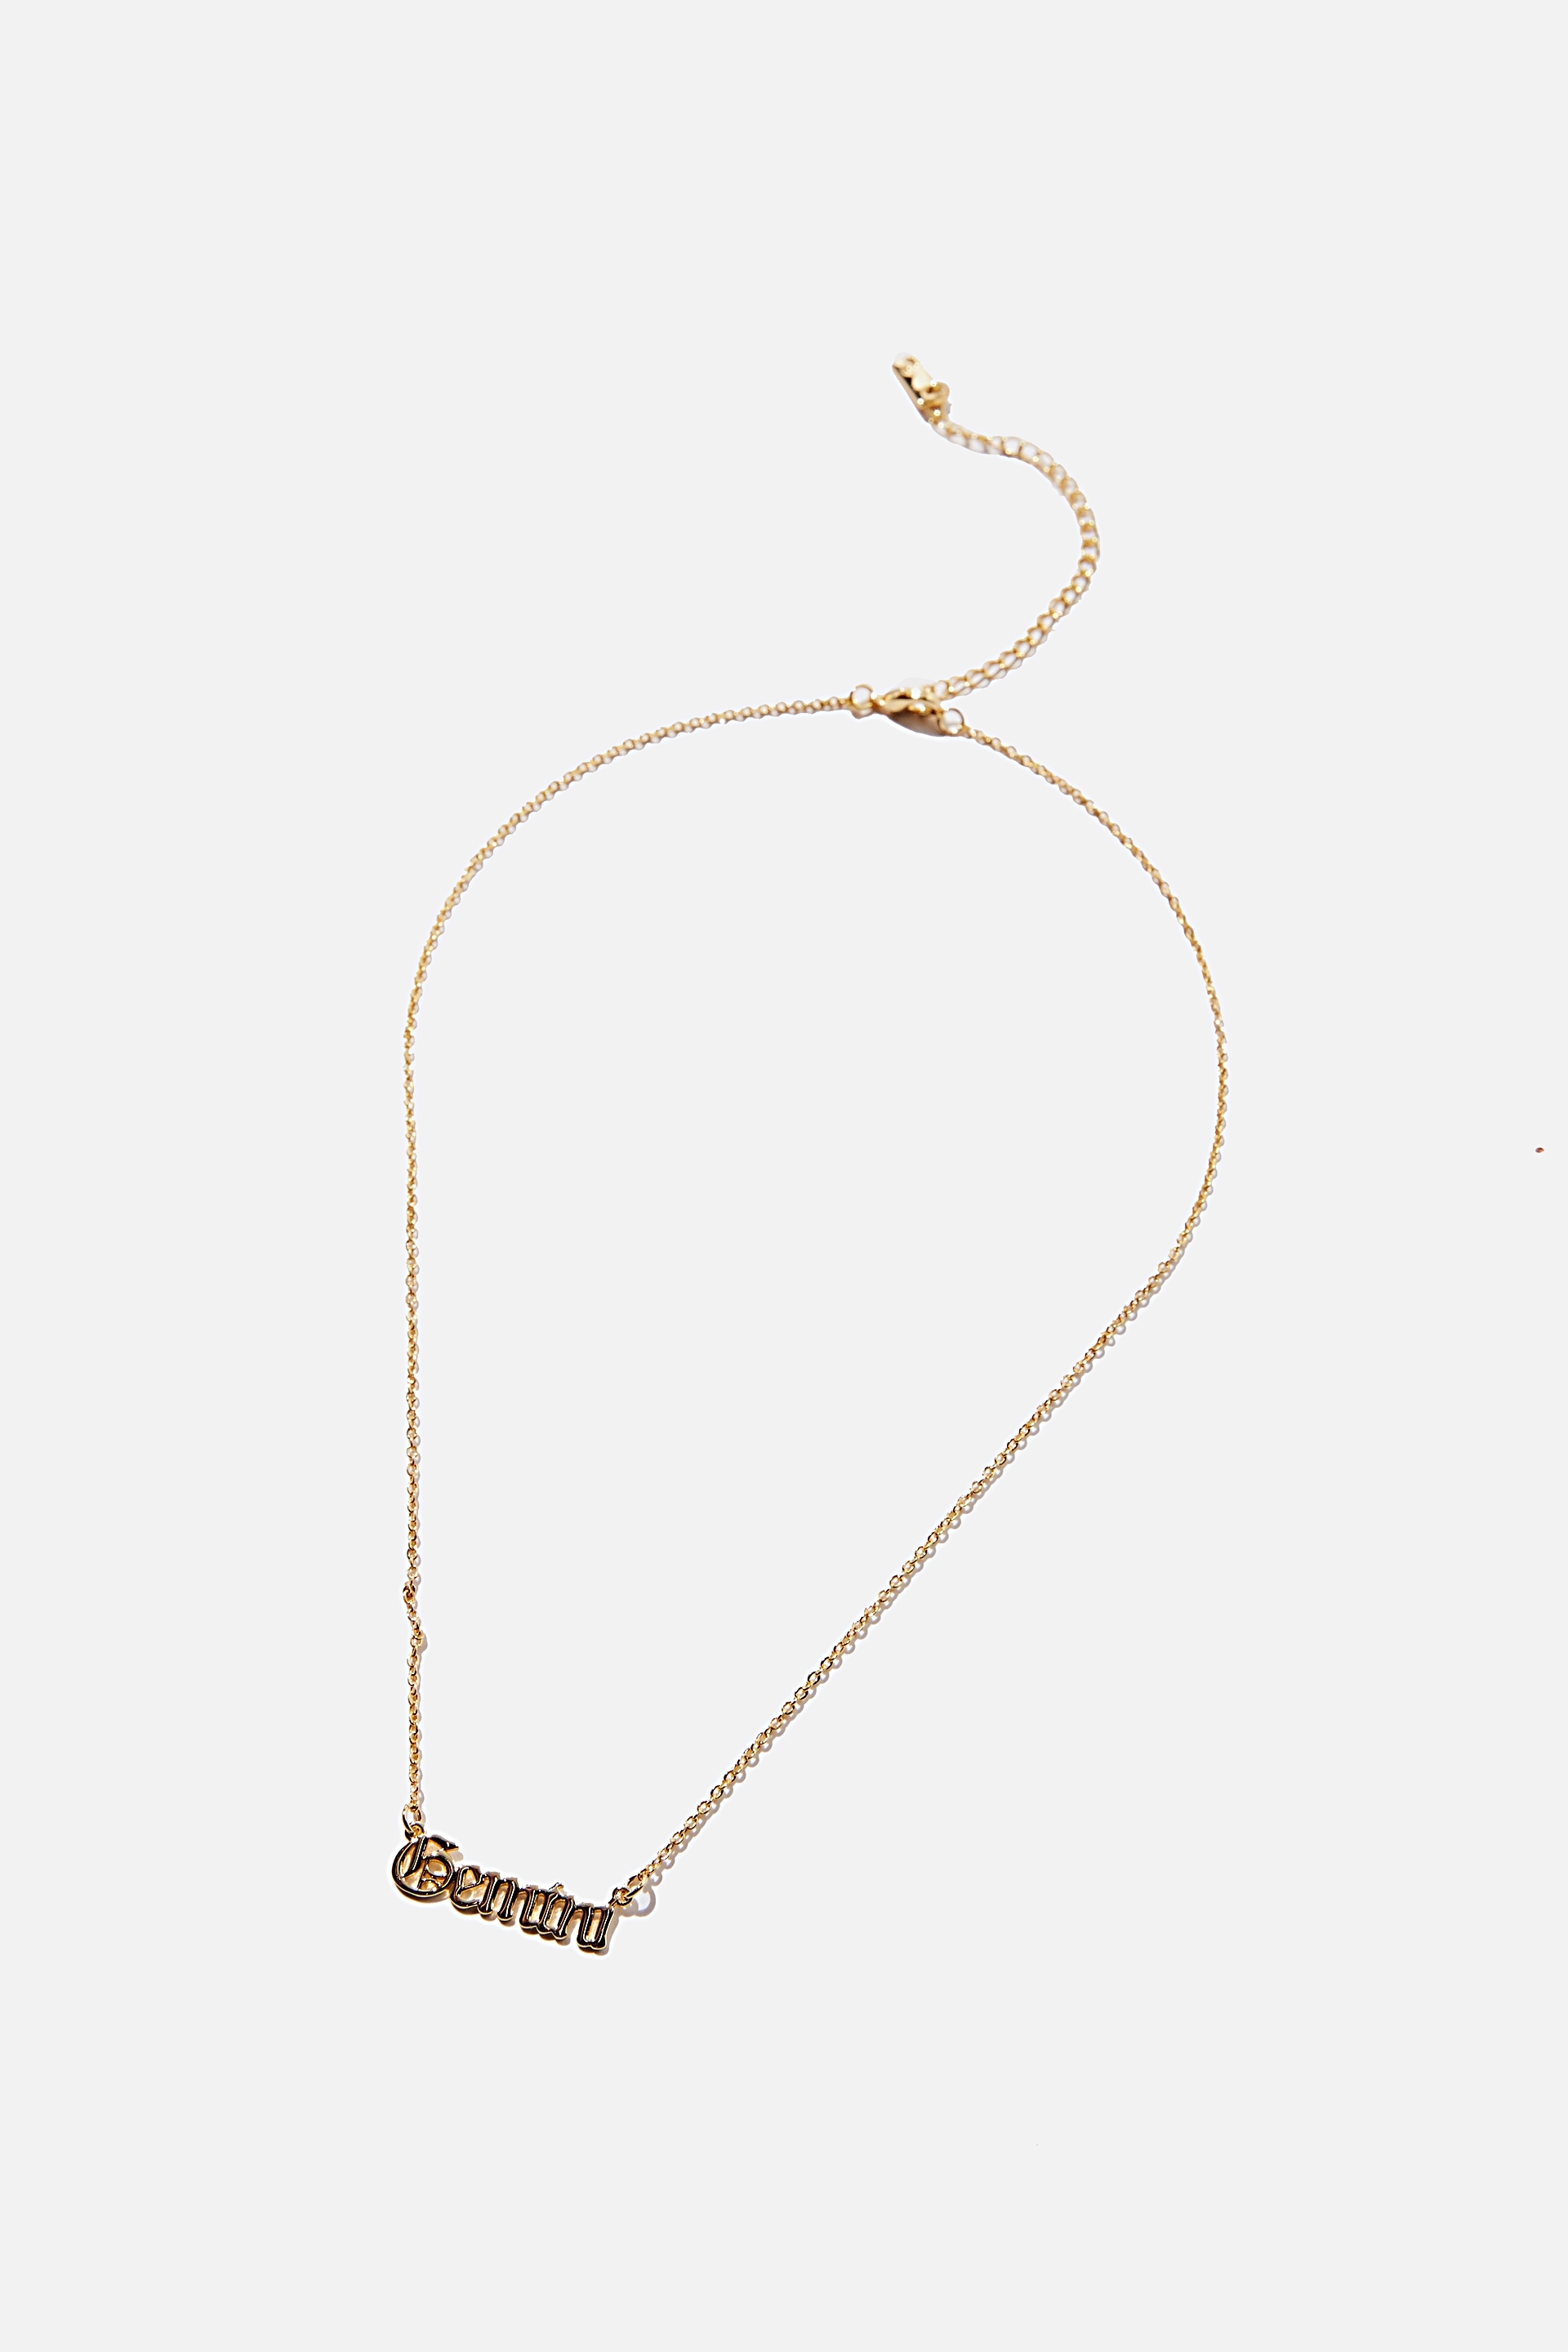 Rubi - Premium Pendant Necklace - Gold plated gemini